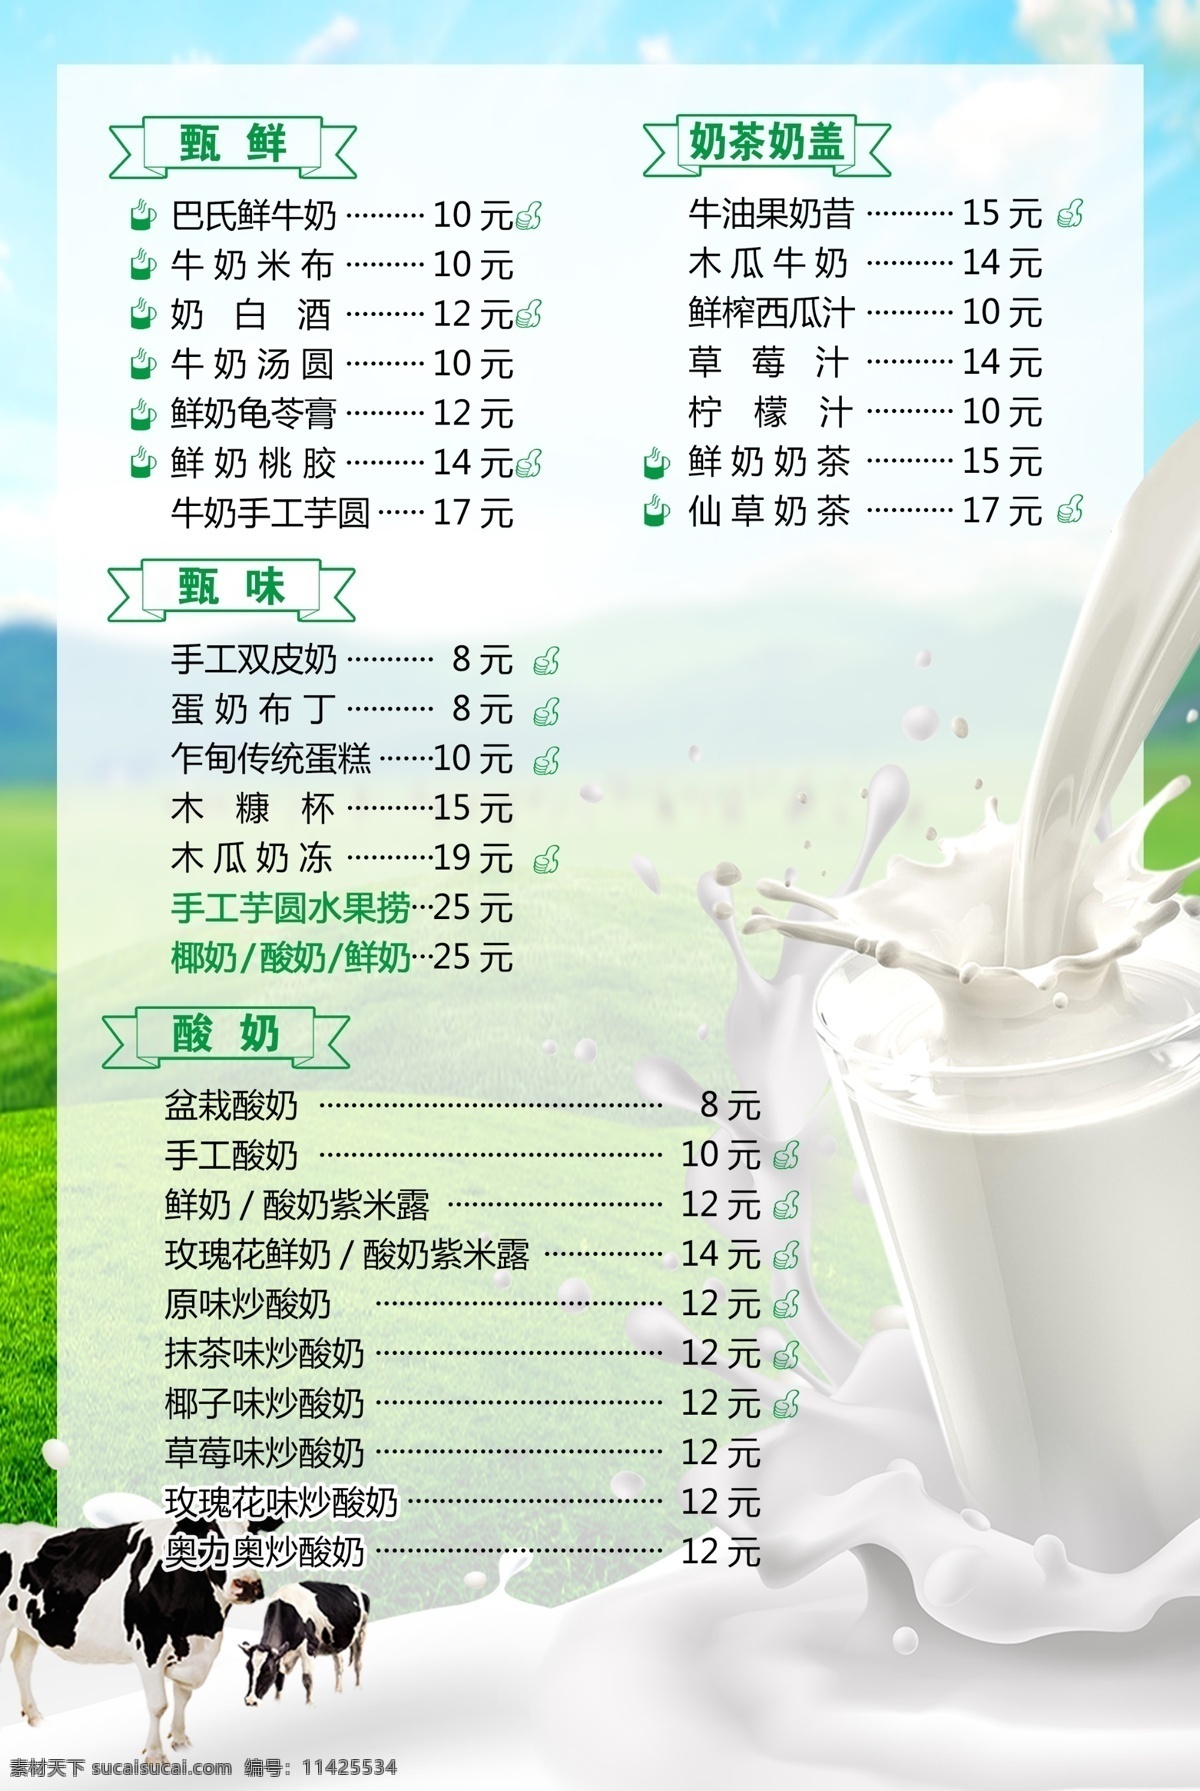 鲜奶价目表 海报 宣传画 展板 宣传 宣传海报 菜单菜谱